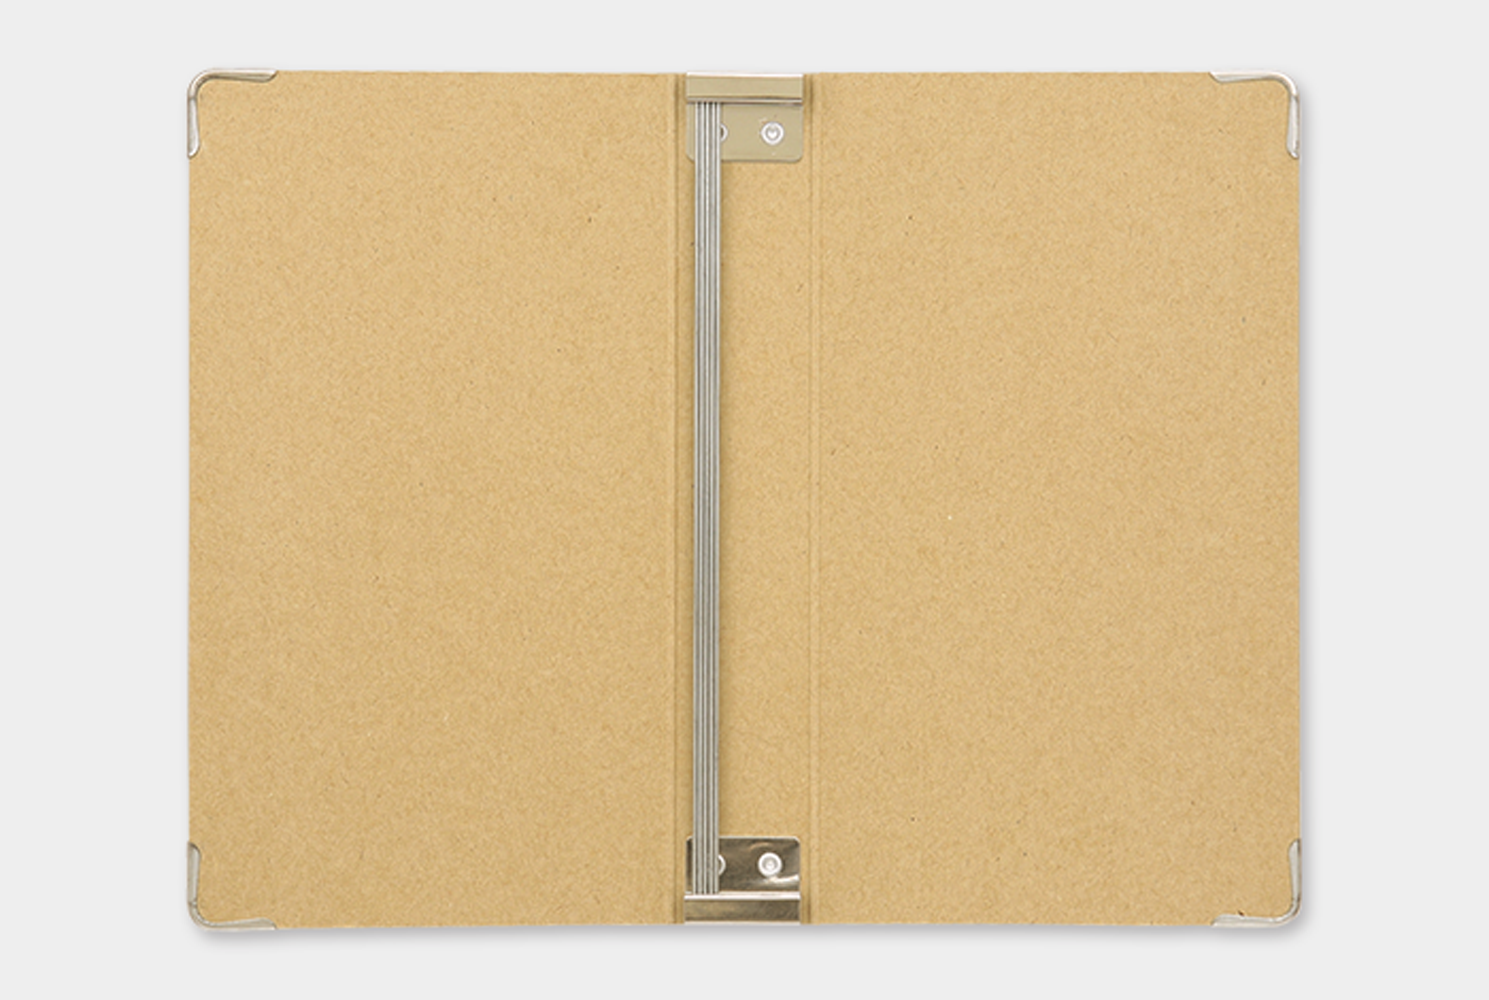 TRAVELER'S notebook - 011. Binder Refill